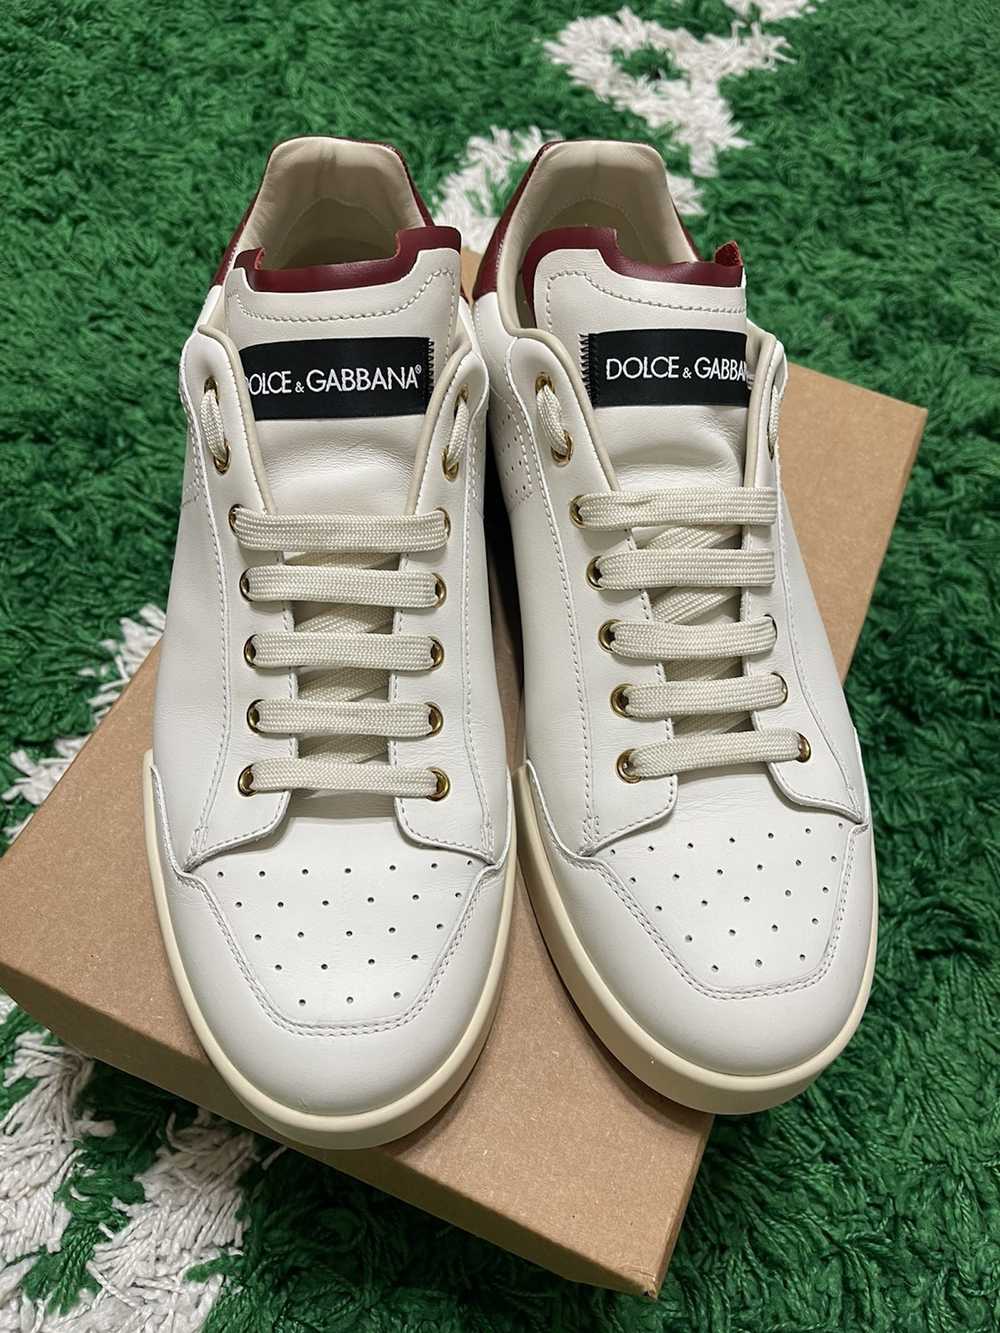 Dolce & Gabbana Dolce Gabbana Sneakers - image 2